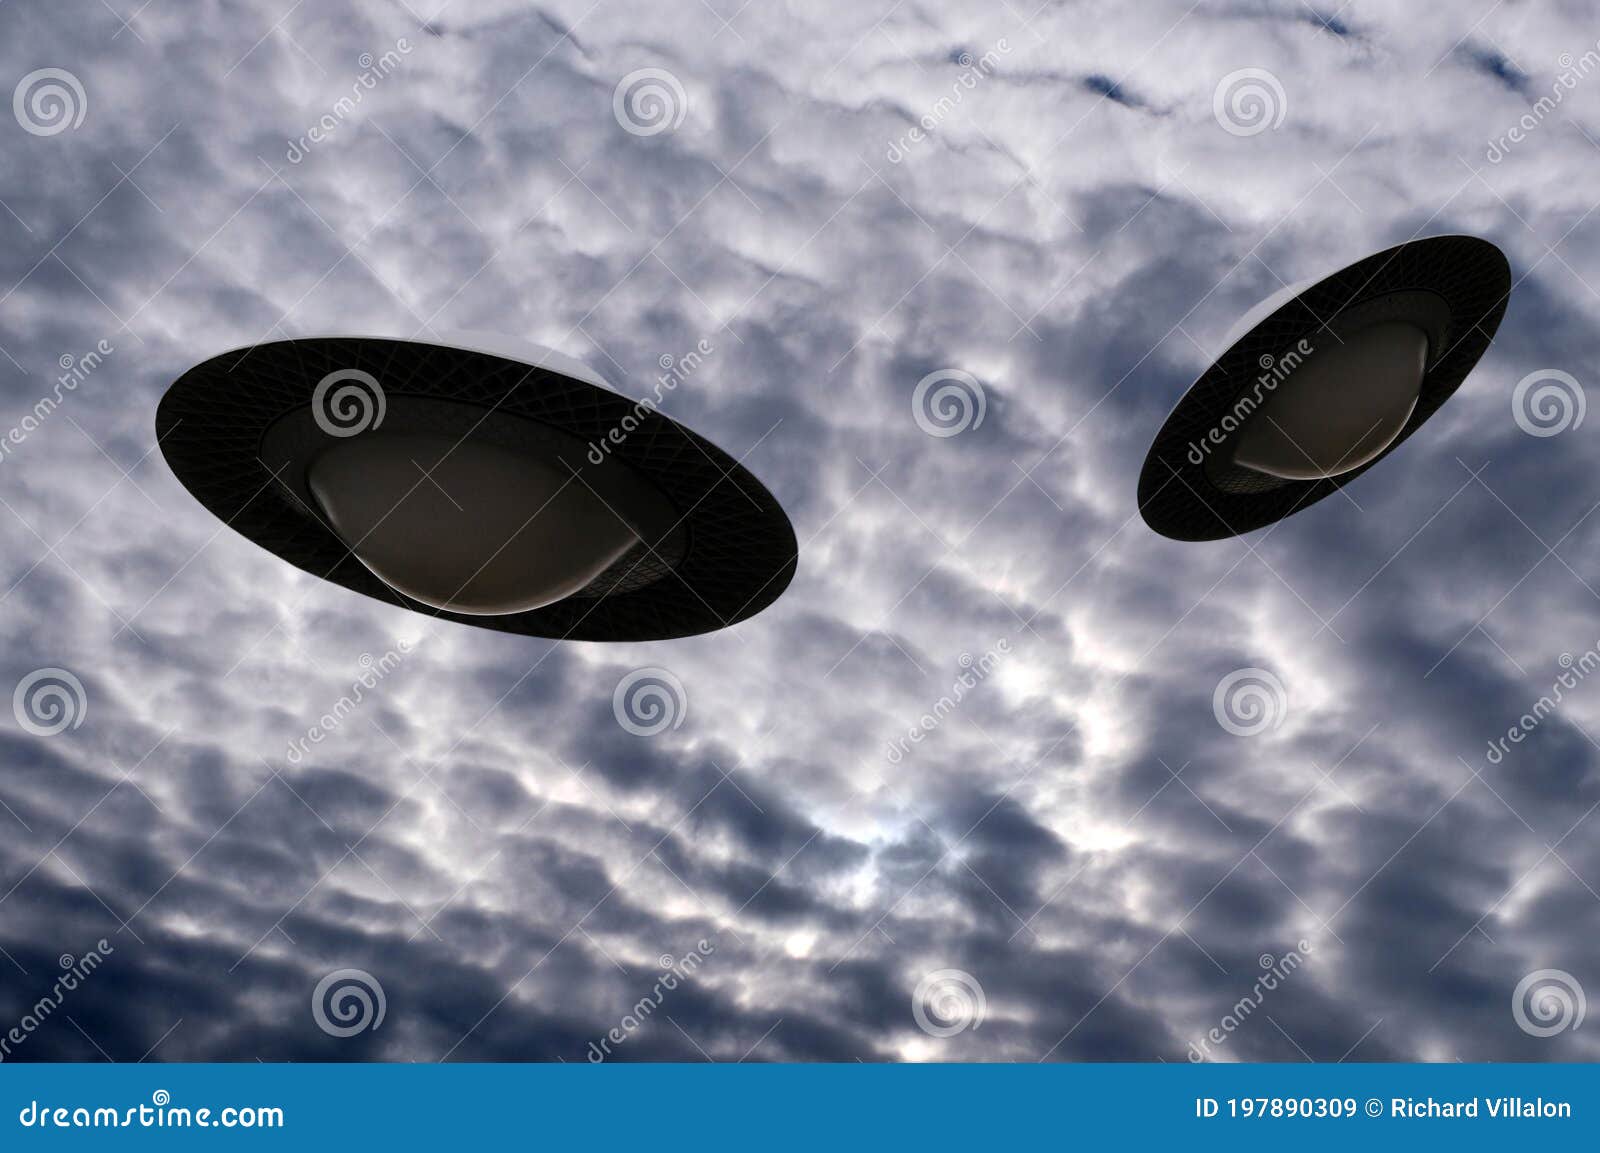 Joven Sur Me gusta Concepto De Platillos Voladores En Un Cielo Nublado Imagen de archivo -  Imagen de dispositivo, invasor: 197890309